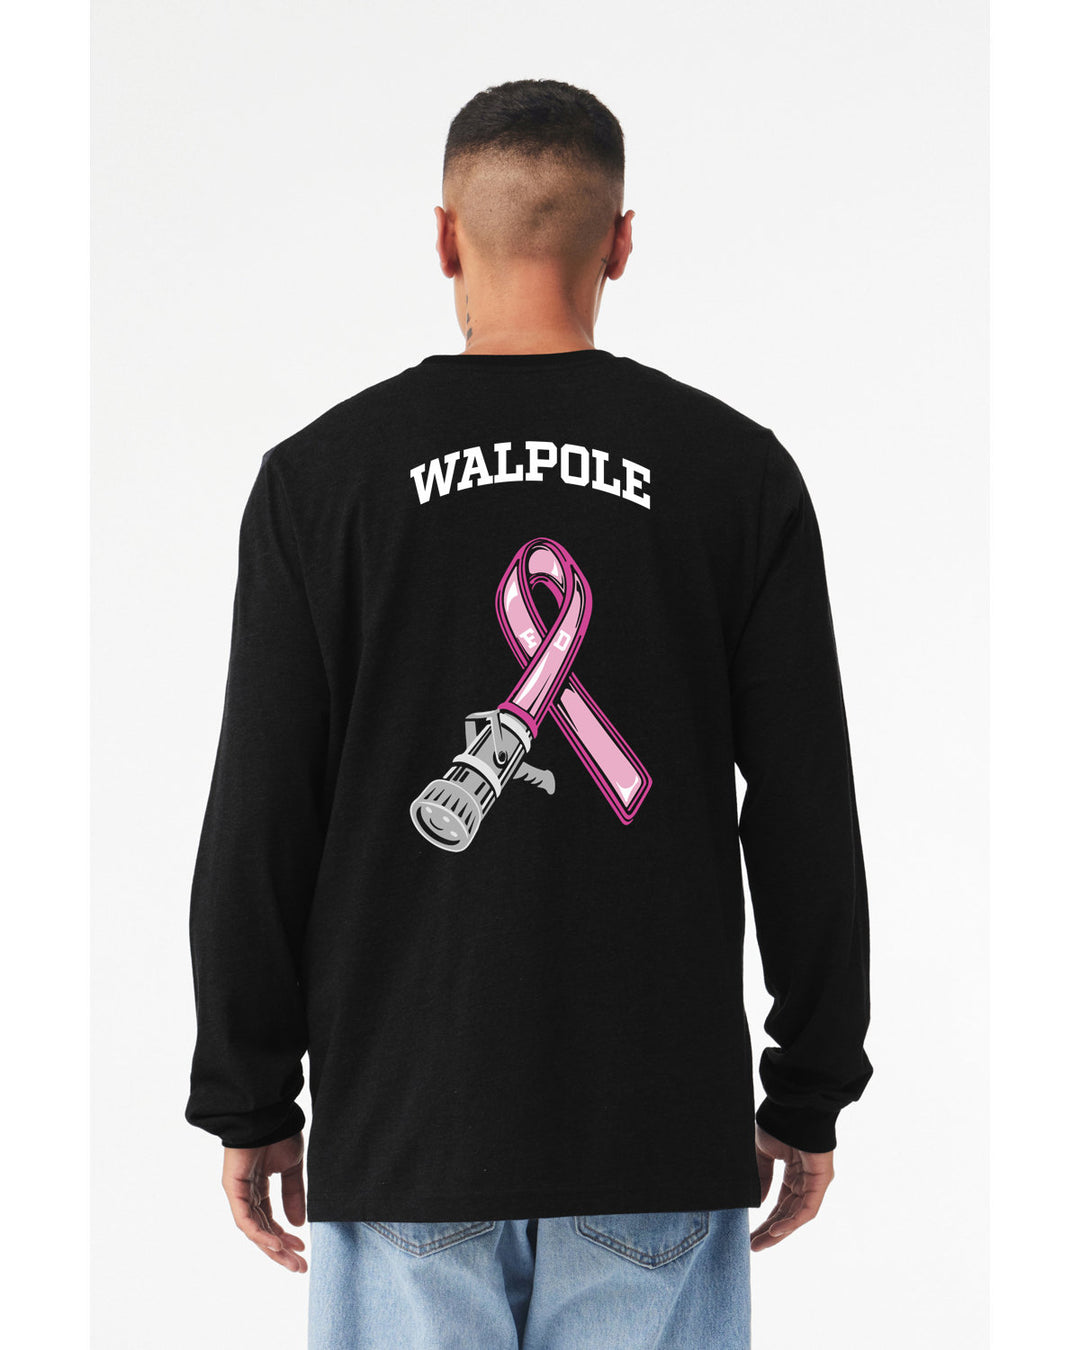 Walpole FD Breast Cancer Awareness Unisex Jersey Long-Sleeve T-Shirt (3501)